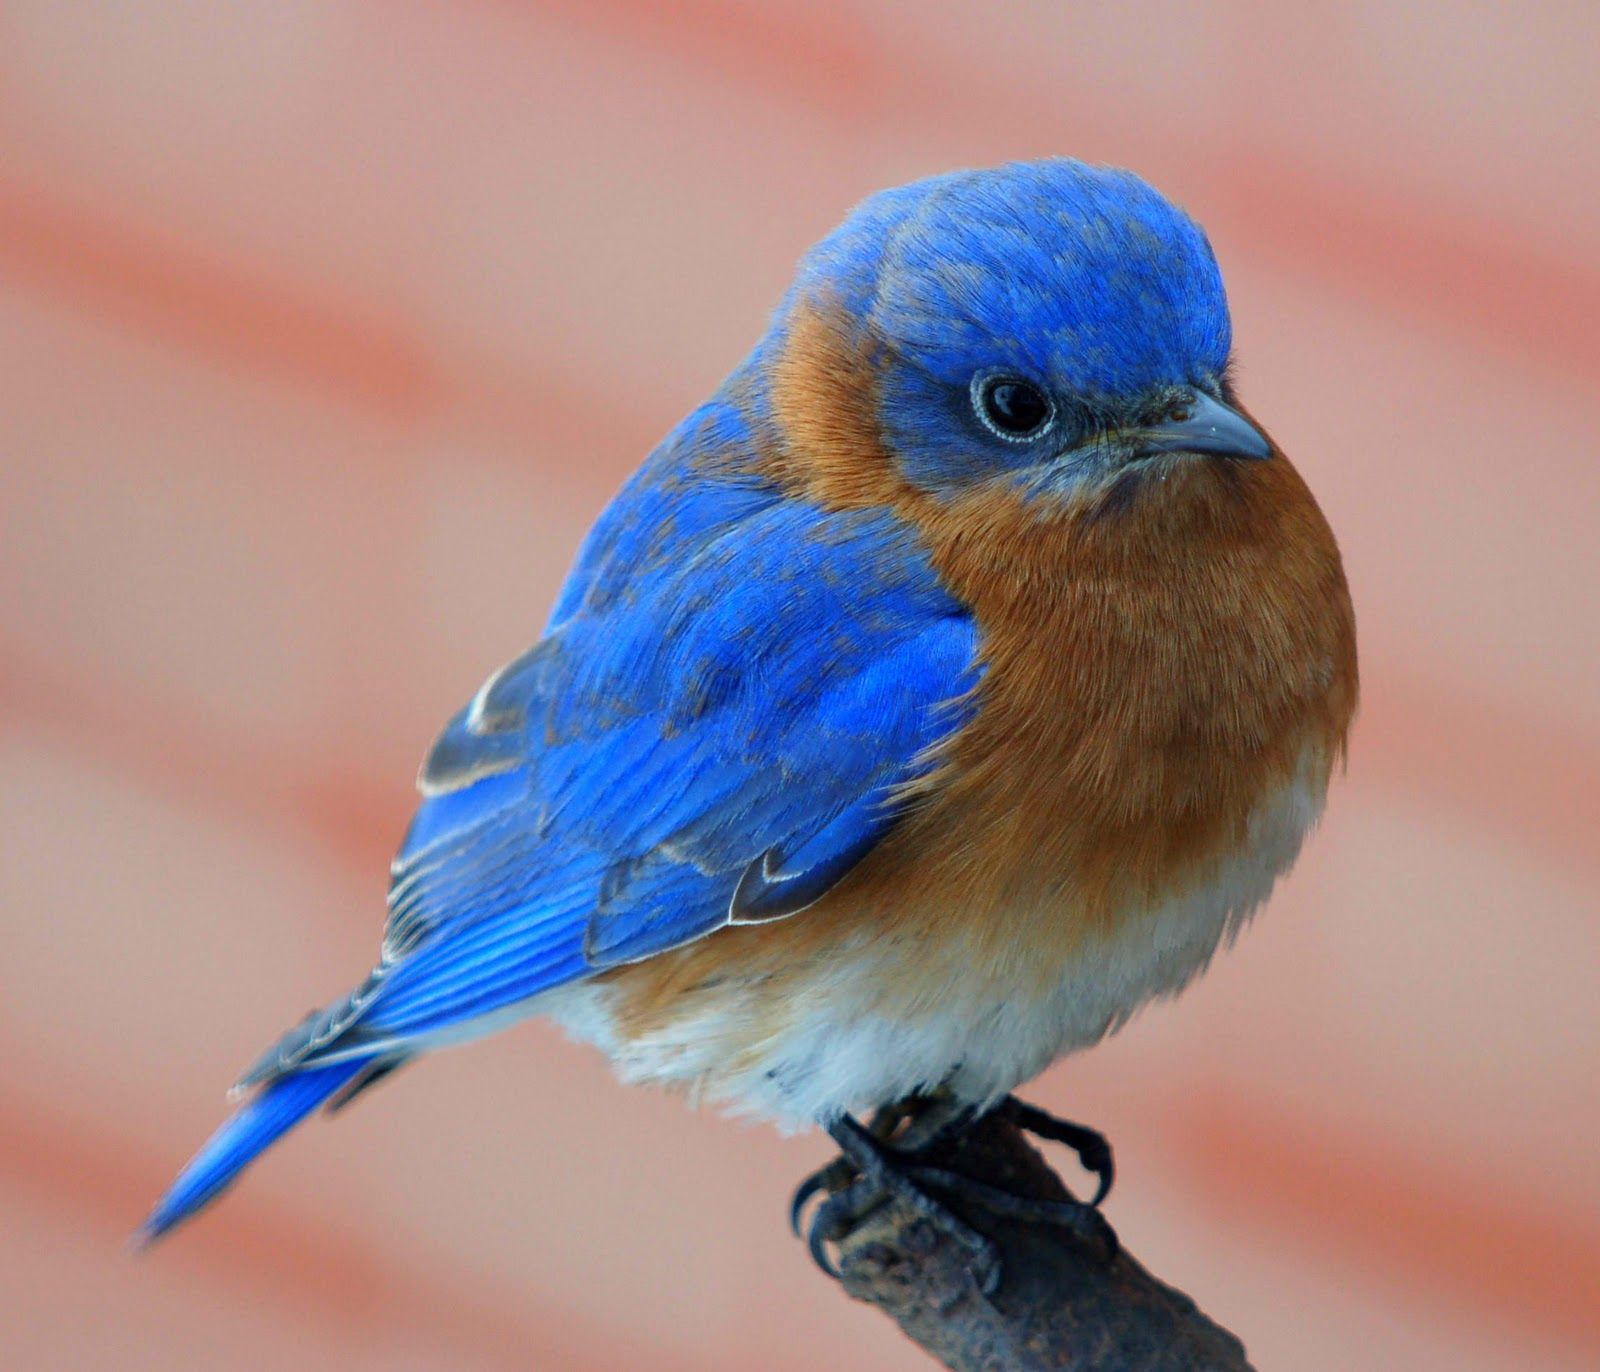 cute little fluffy bluebird | Bluebird | Pinterest | Bird, Animal ...